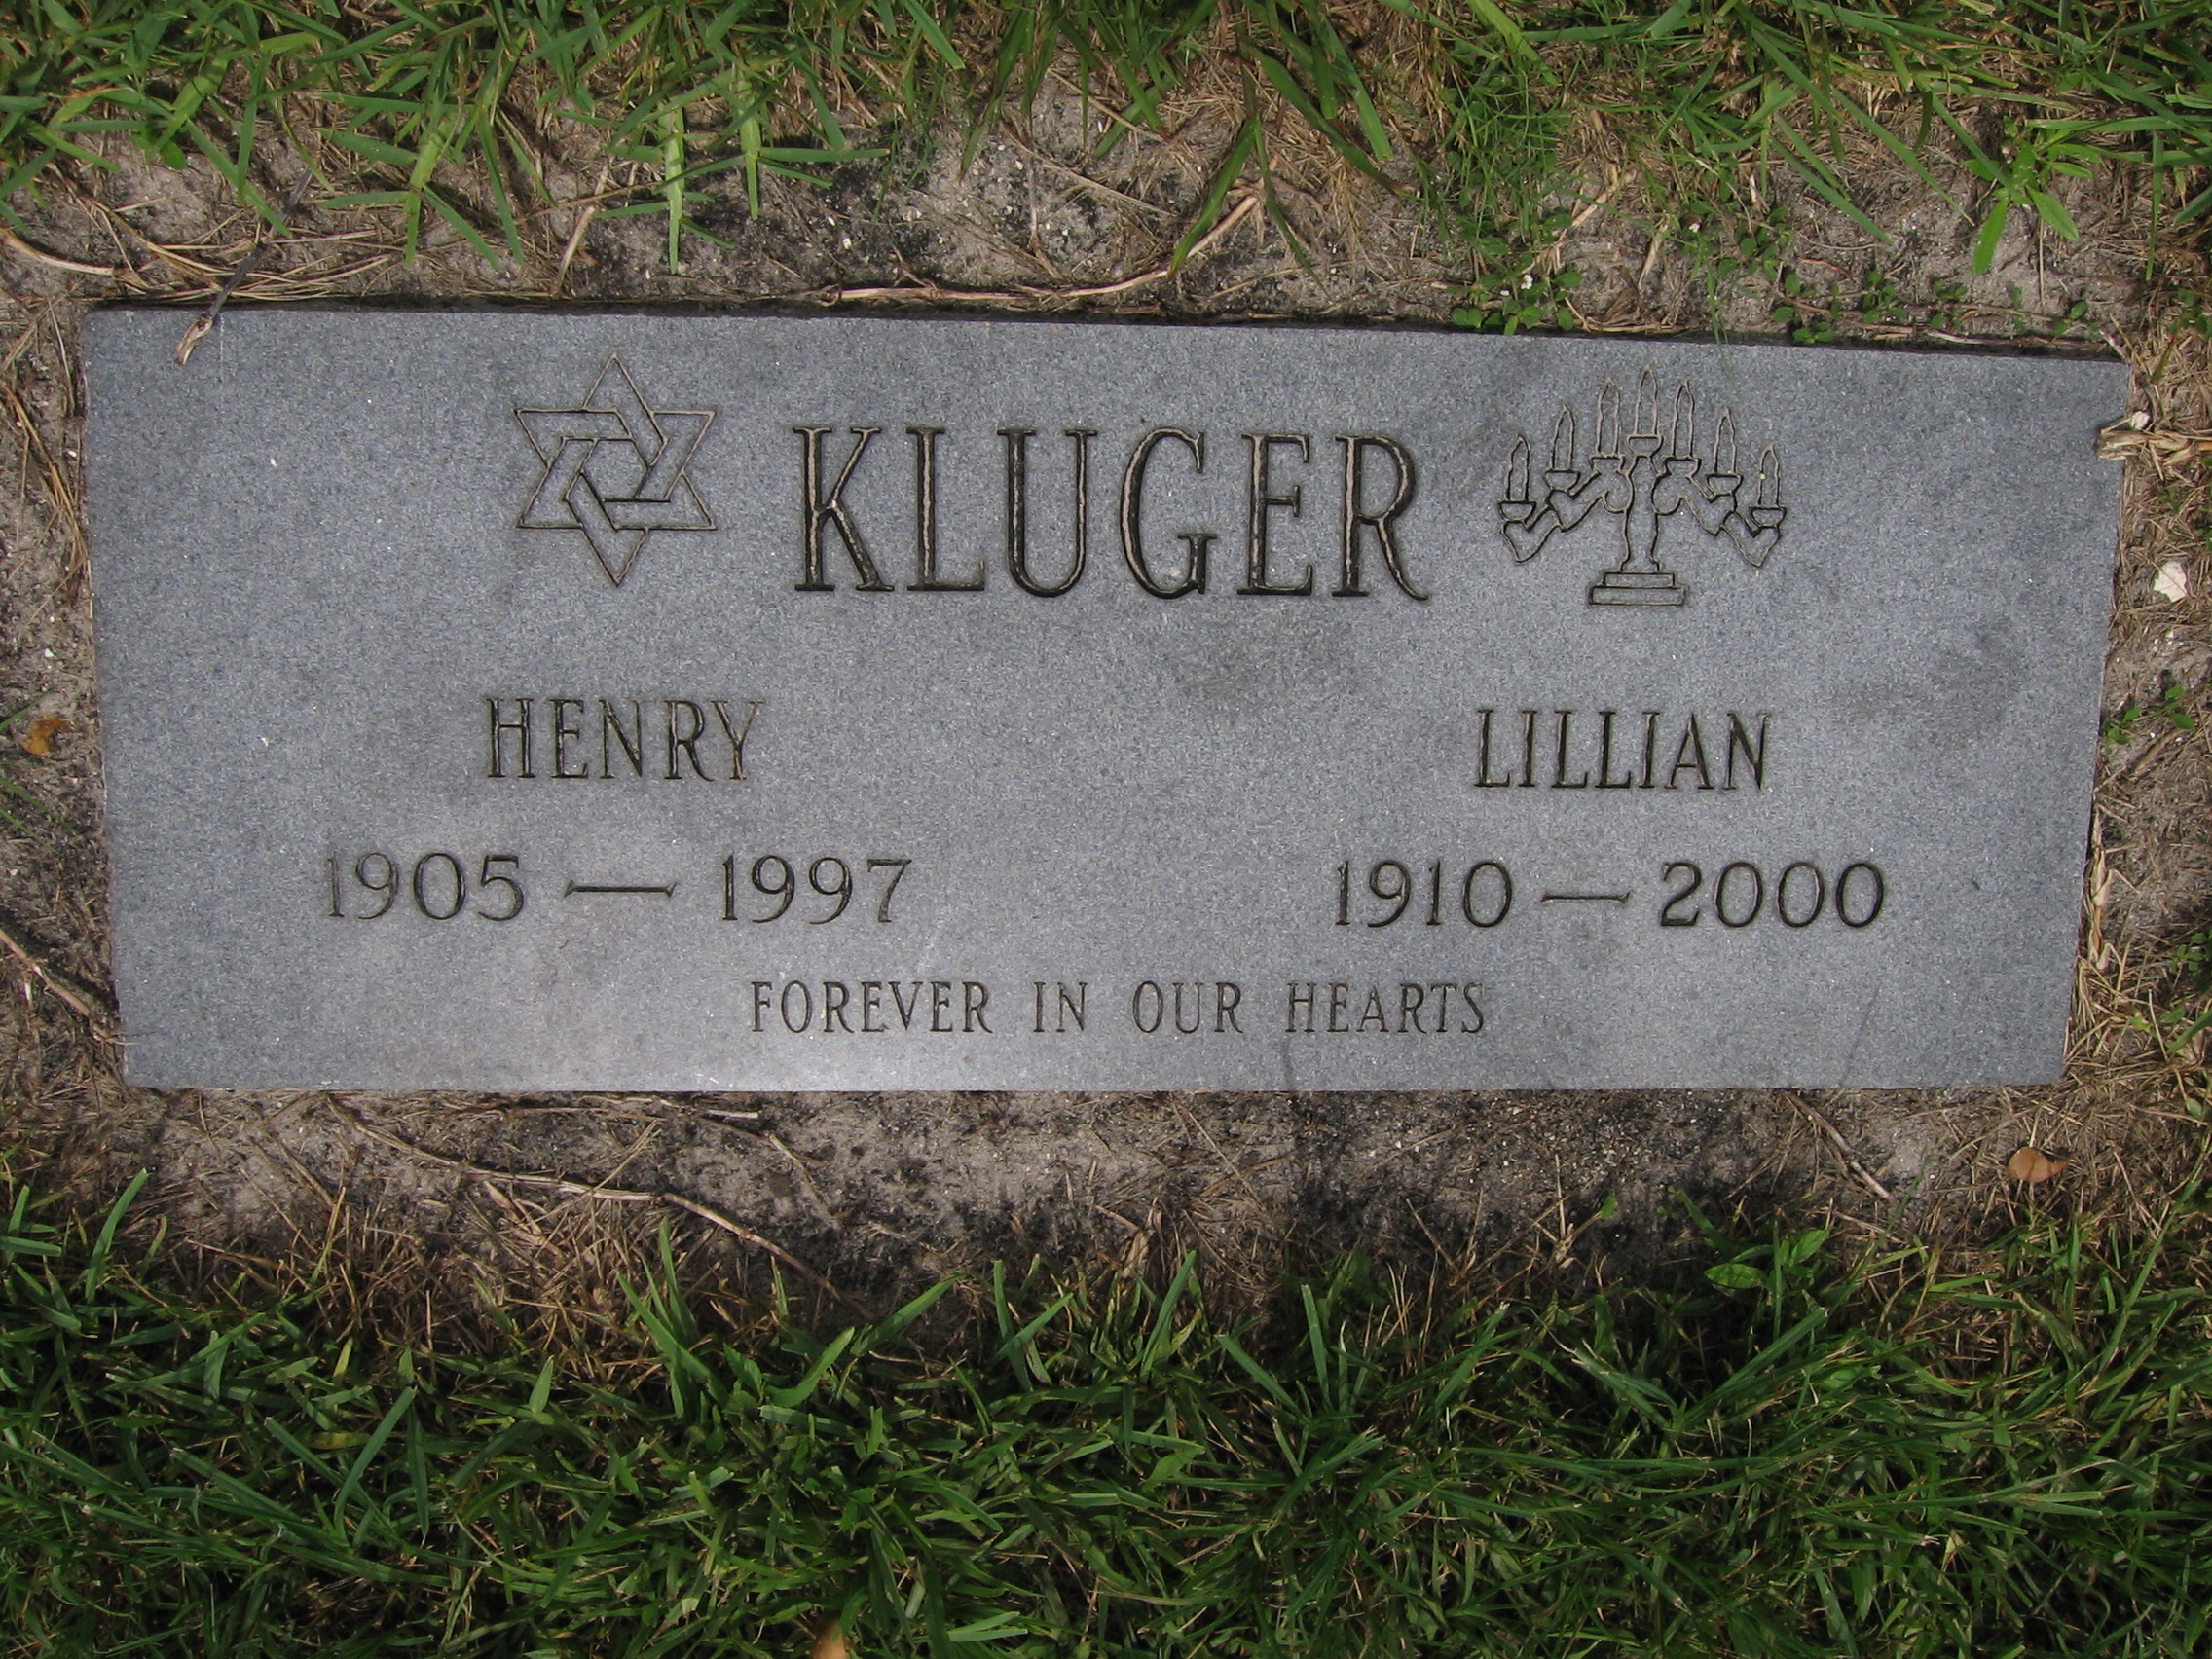 Henry Kluger